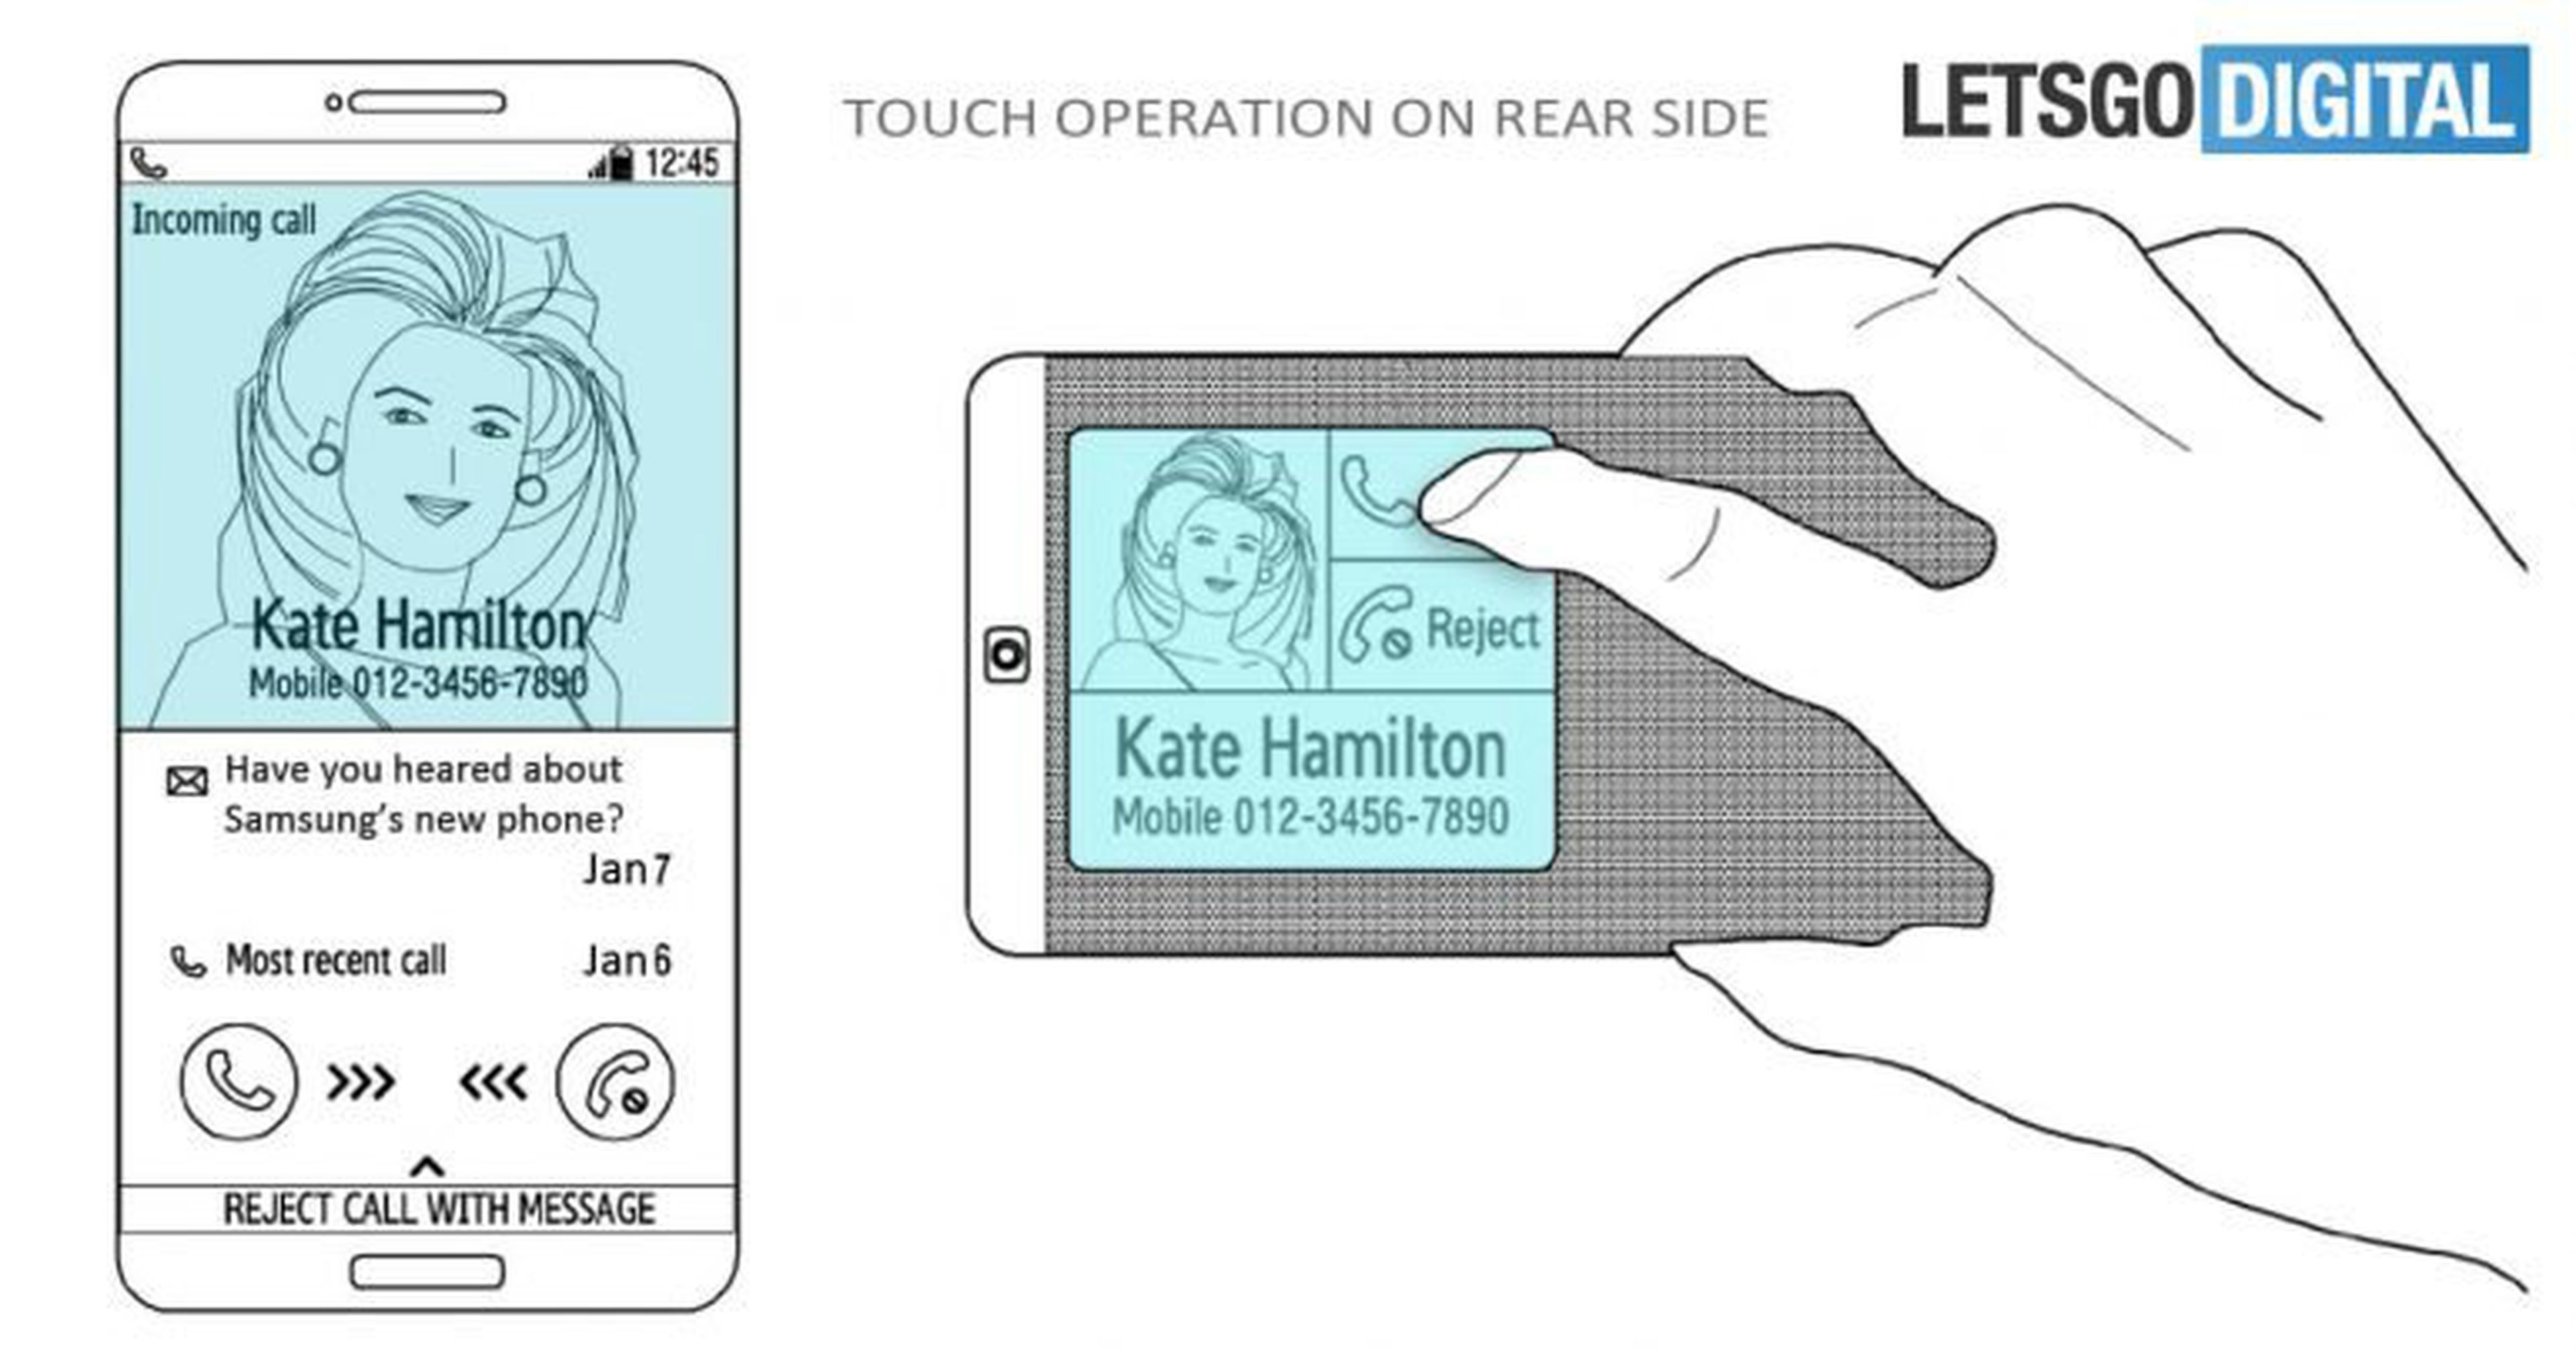 La patente de Samsung muestra cómo puede moverse el contenido entre la pantalla frontal y la trasera según cómo sostenga el teléfono el usuario.